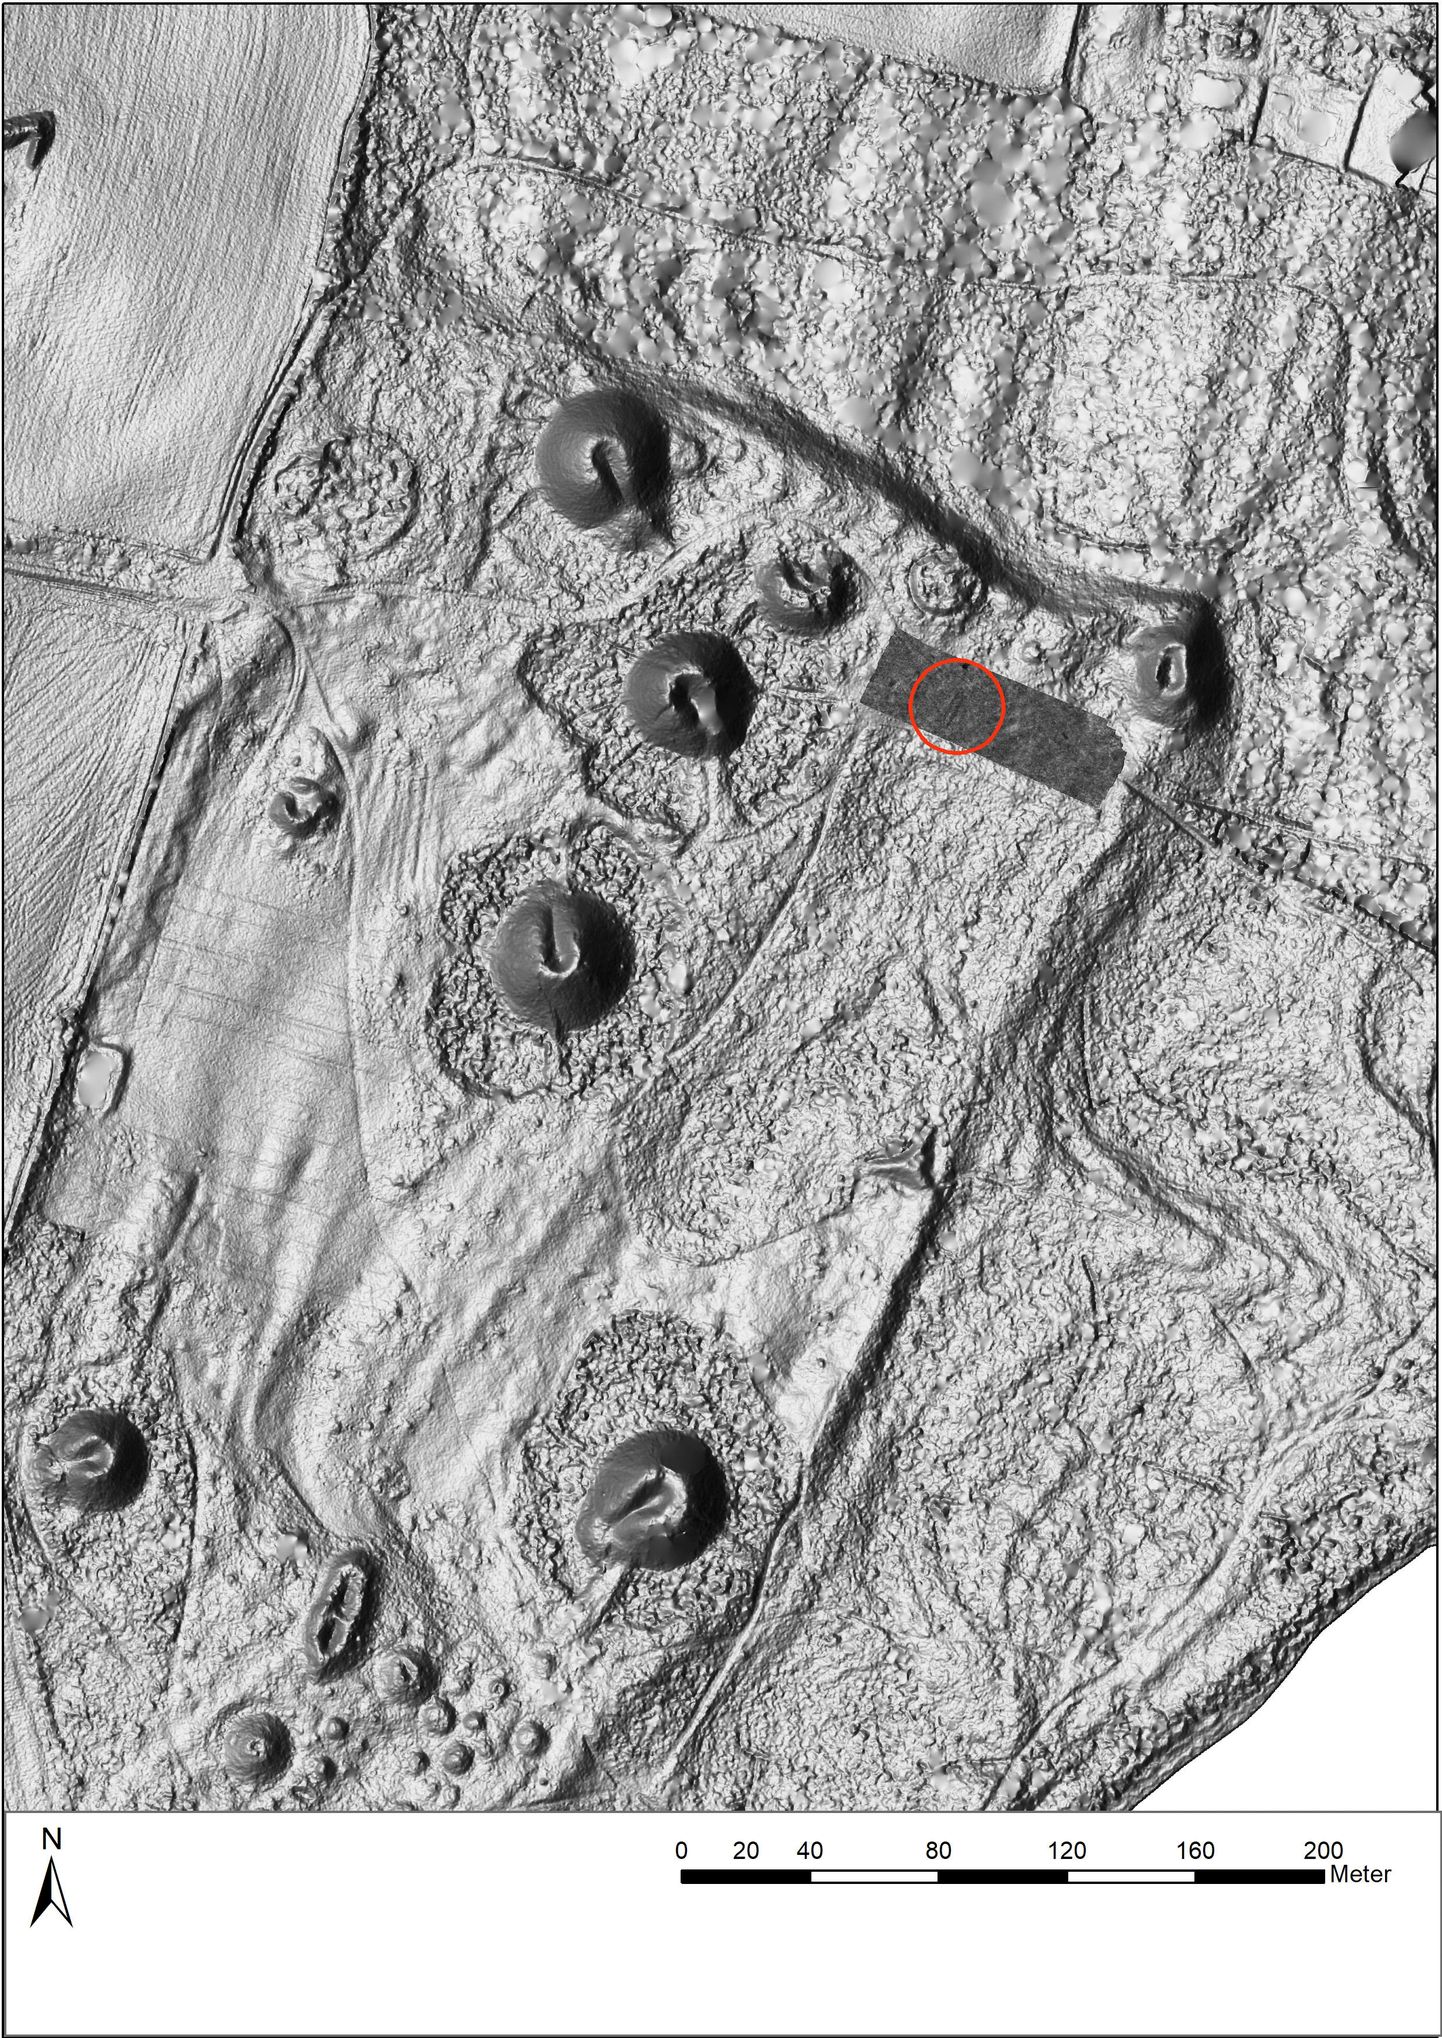 Norra arheoloogid leidsid georadari abil Vestfoldis viikingilaeva kalme